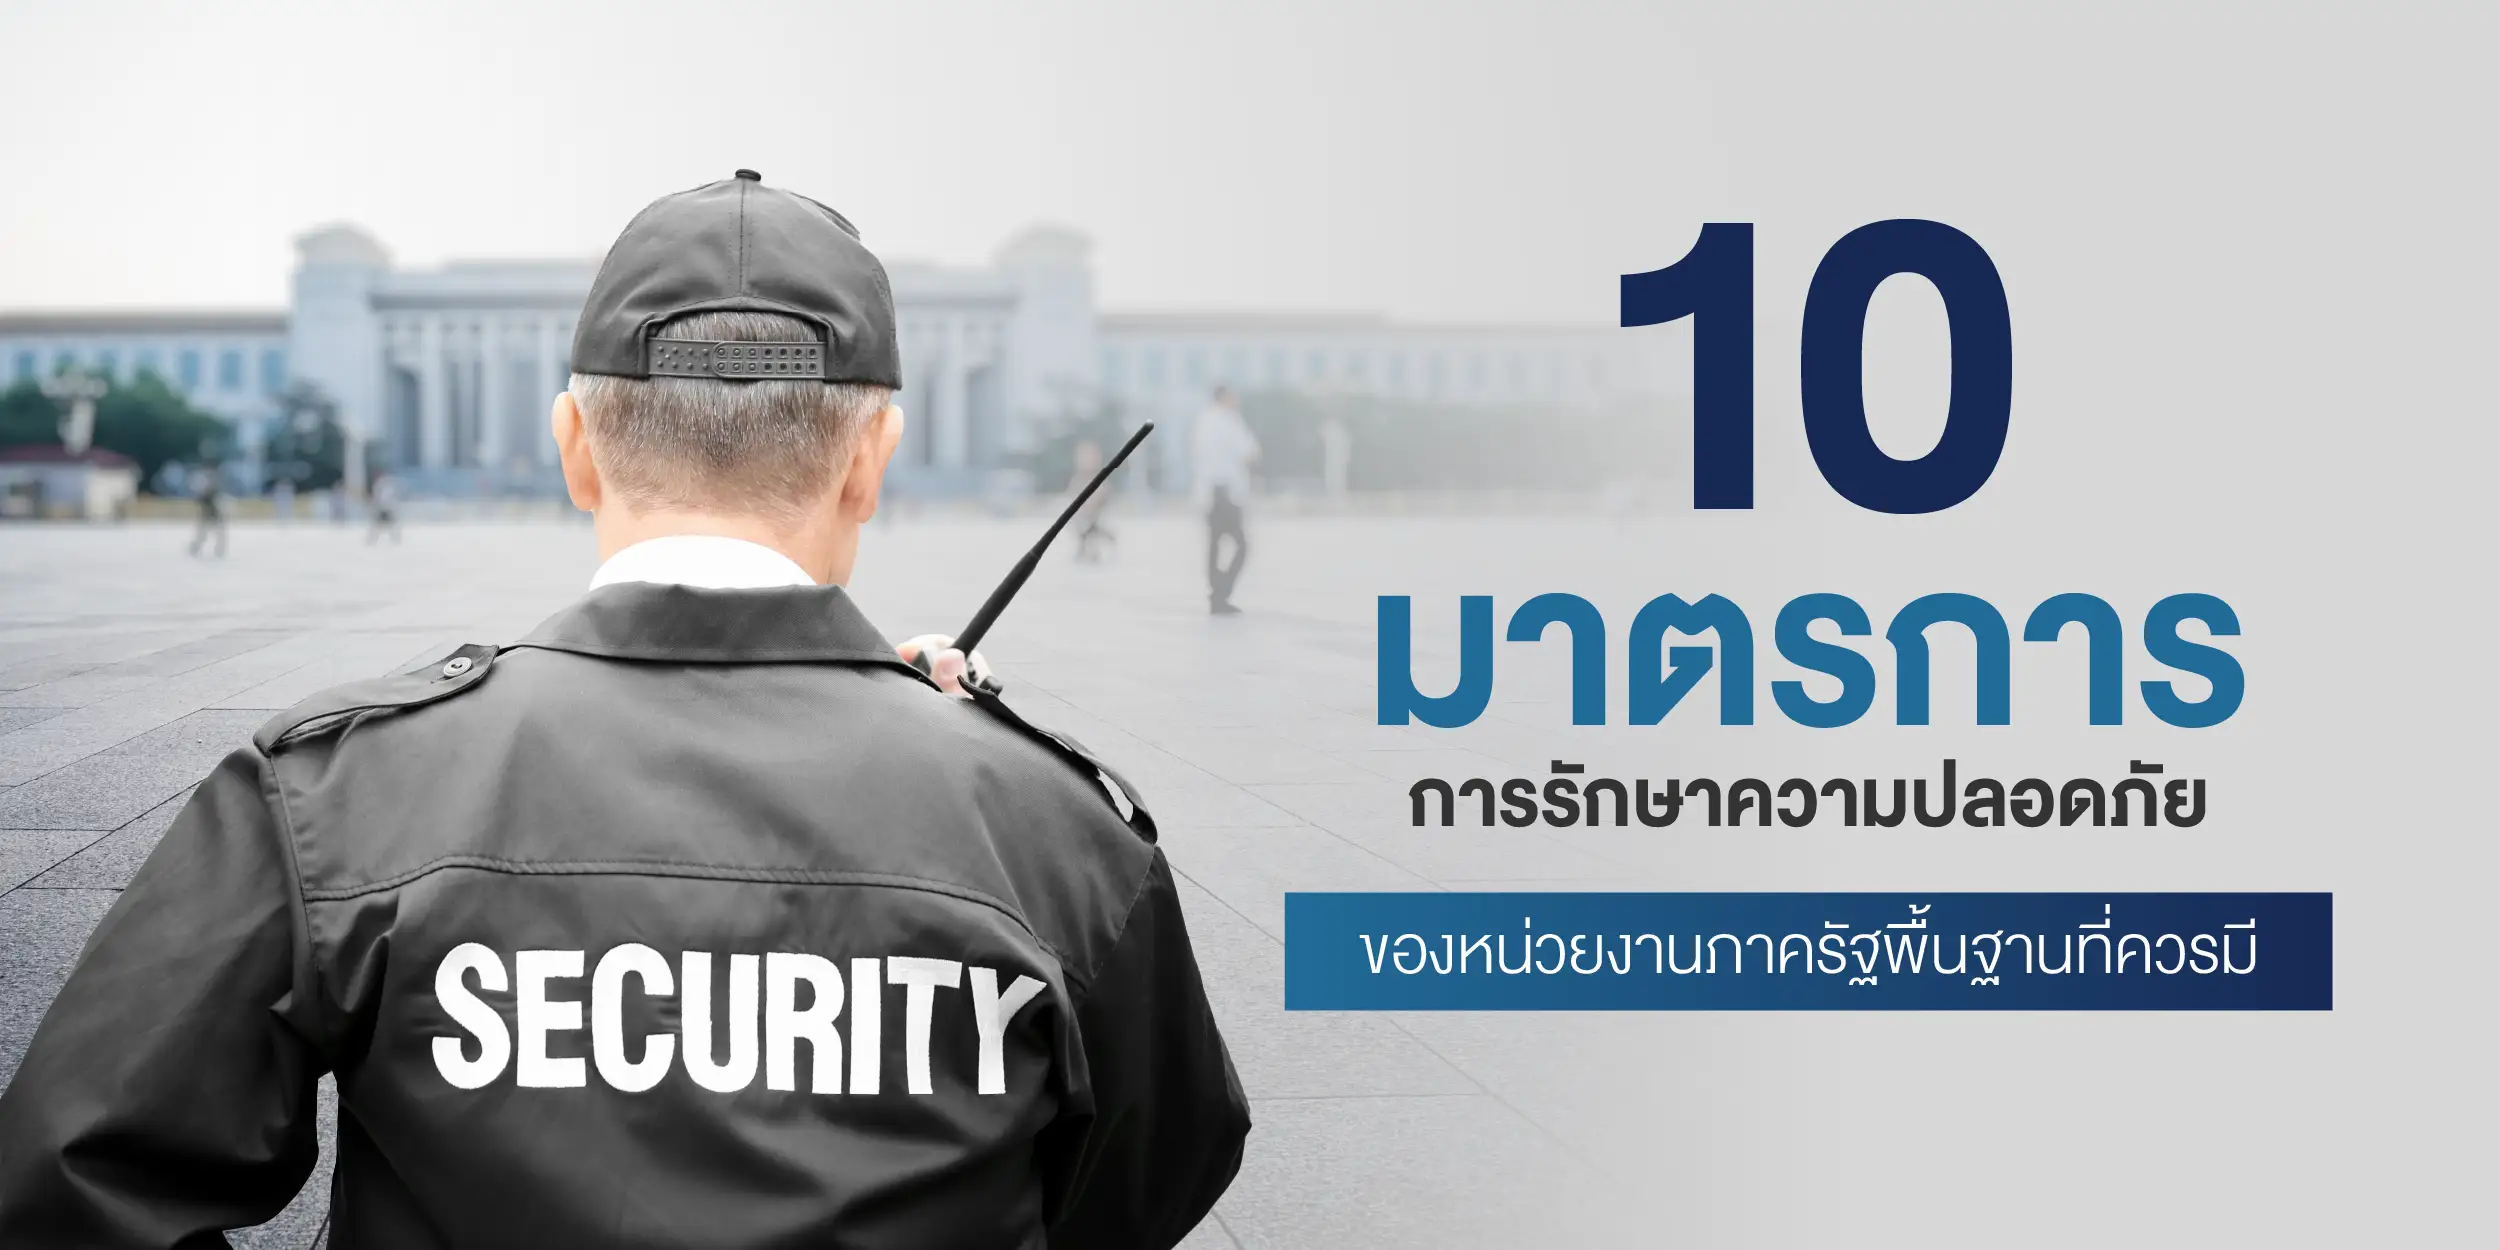 10 มาตรการการรักษาความปลอดภัยของหน่วยงานภาครัฐขั้นพื้นฐาน ที่ควรมี